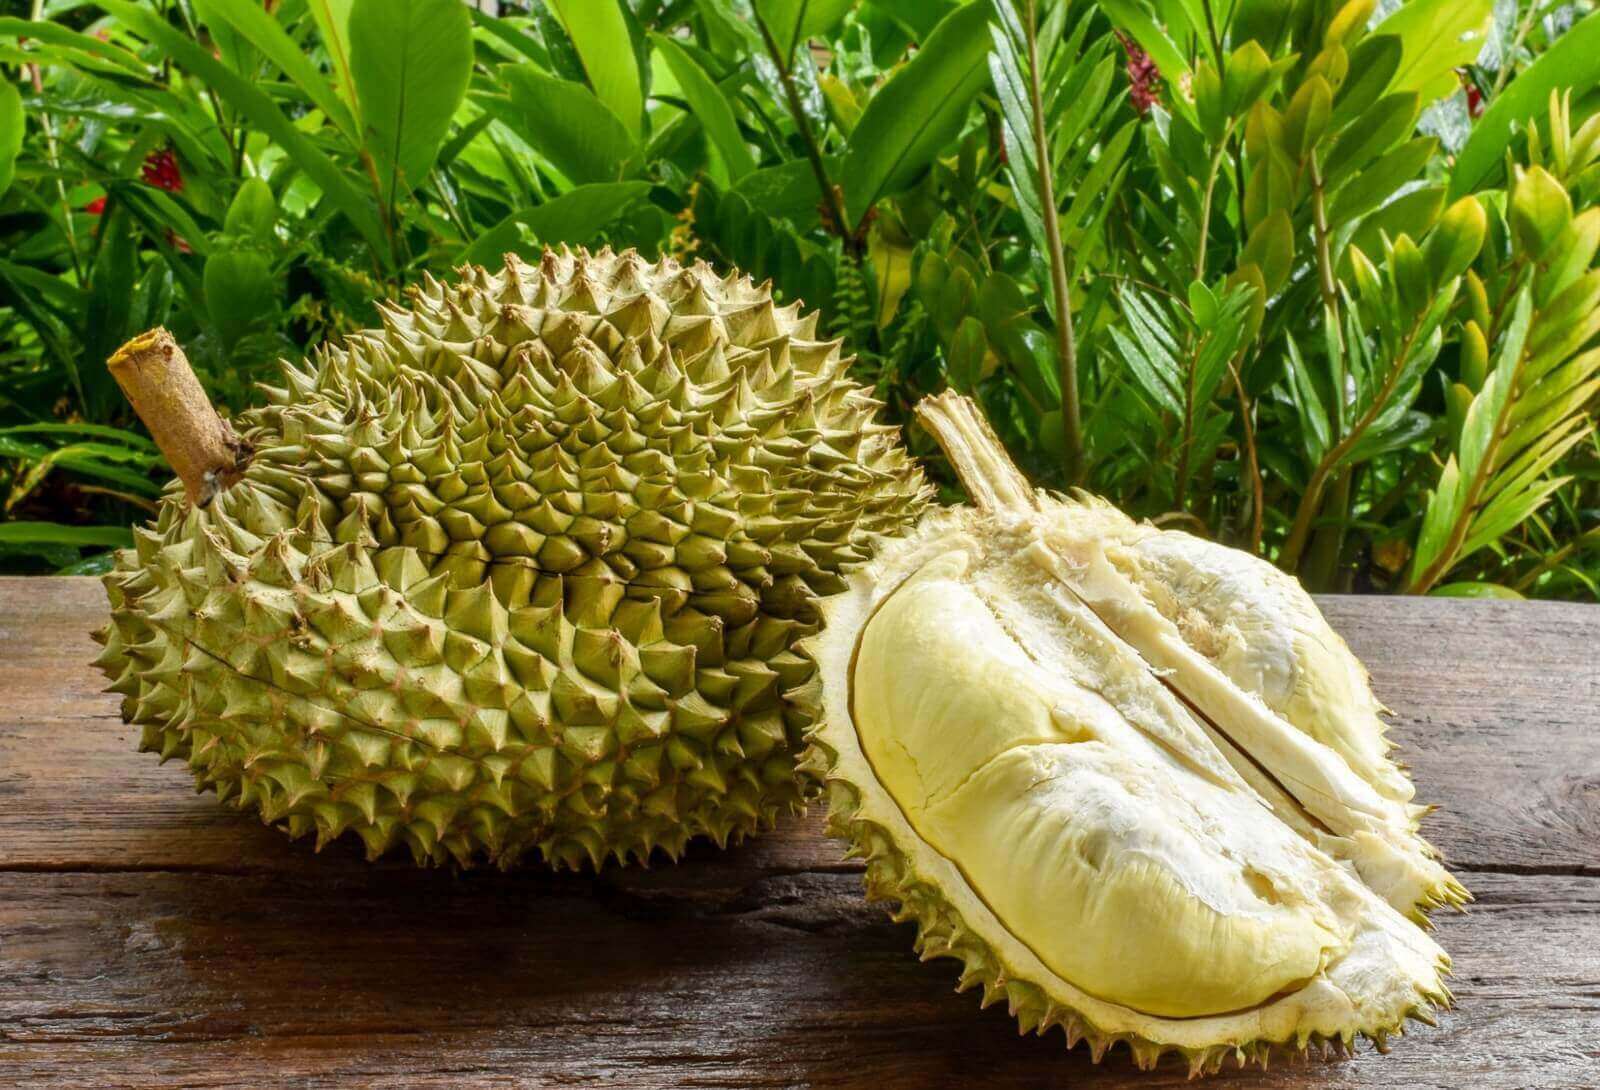 (已失效)Profitable Durian (Profit 150K - 300K) Looking For Loan (5% Monthly Return)